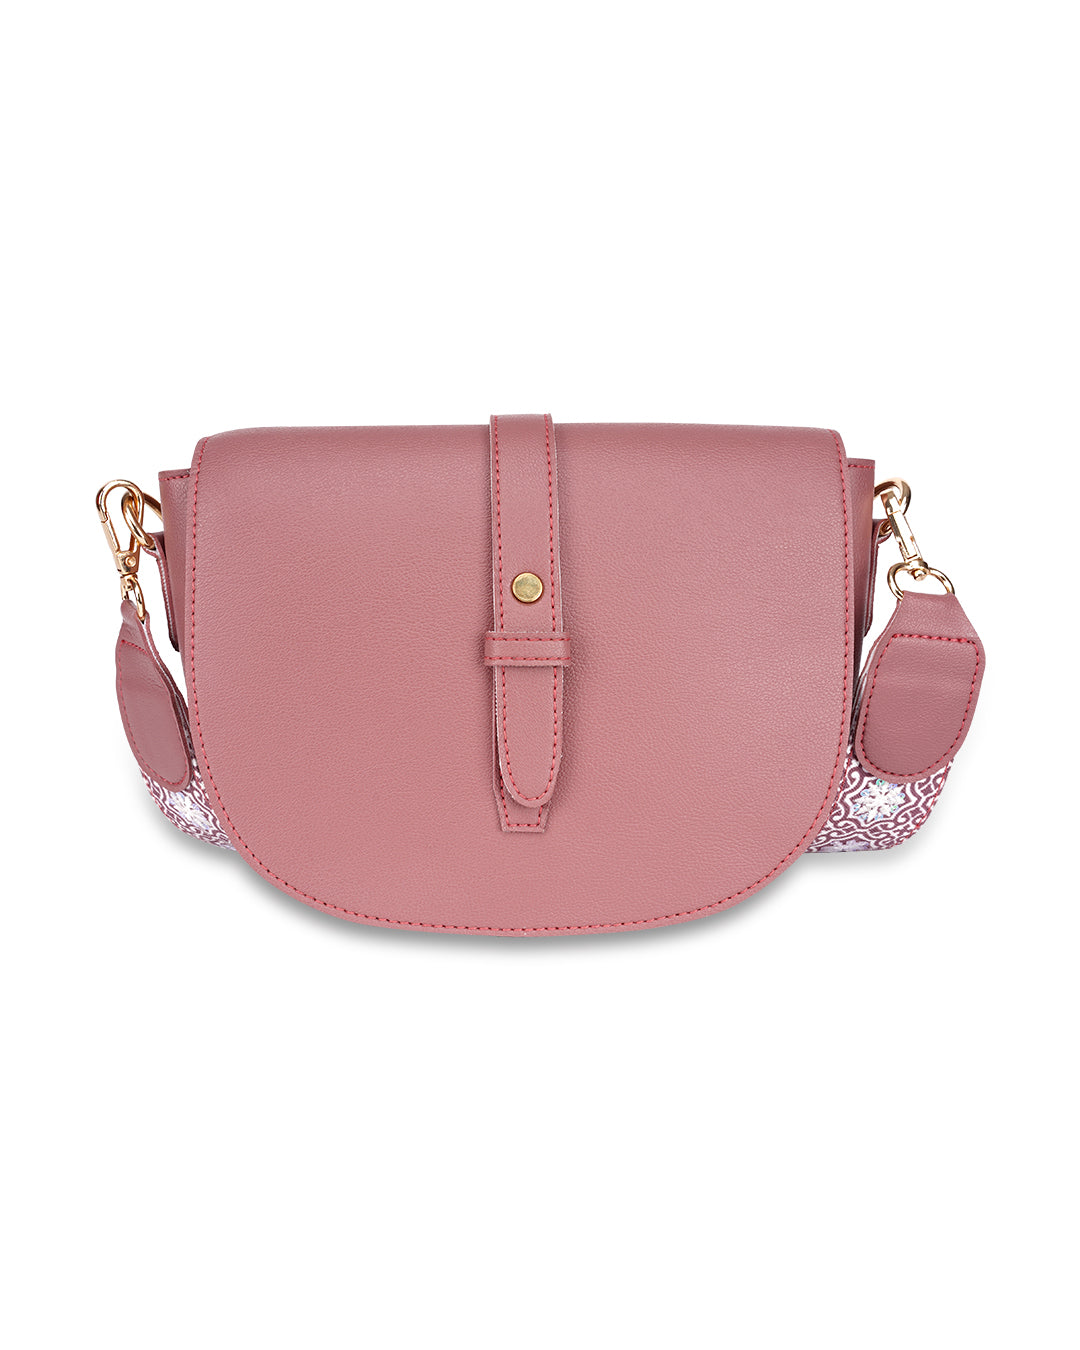 Rose Pink Embroidered Handle Sling Bag